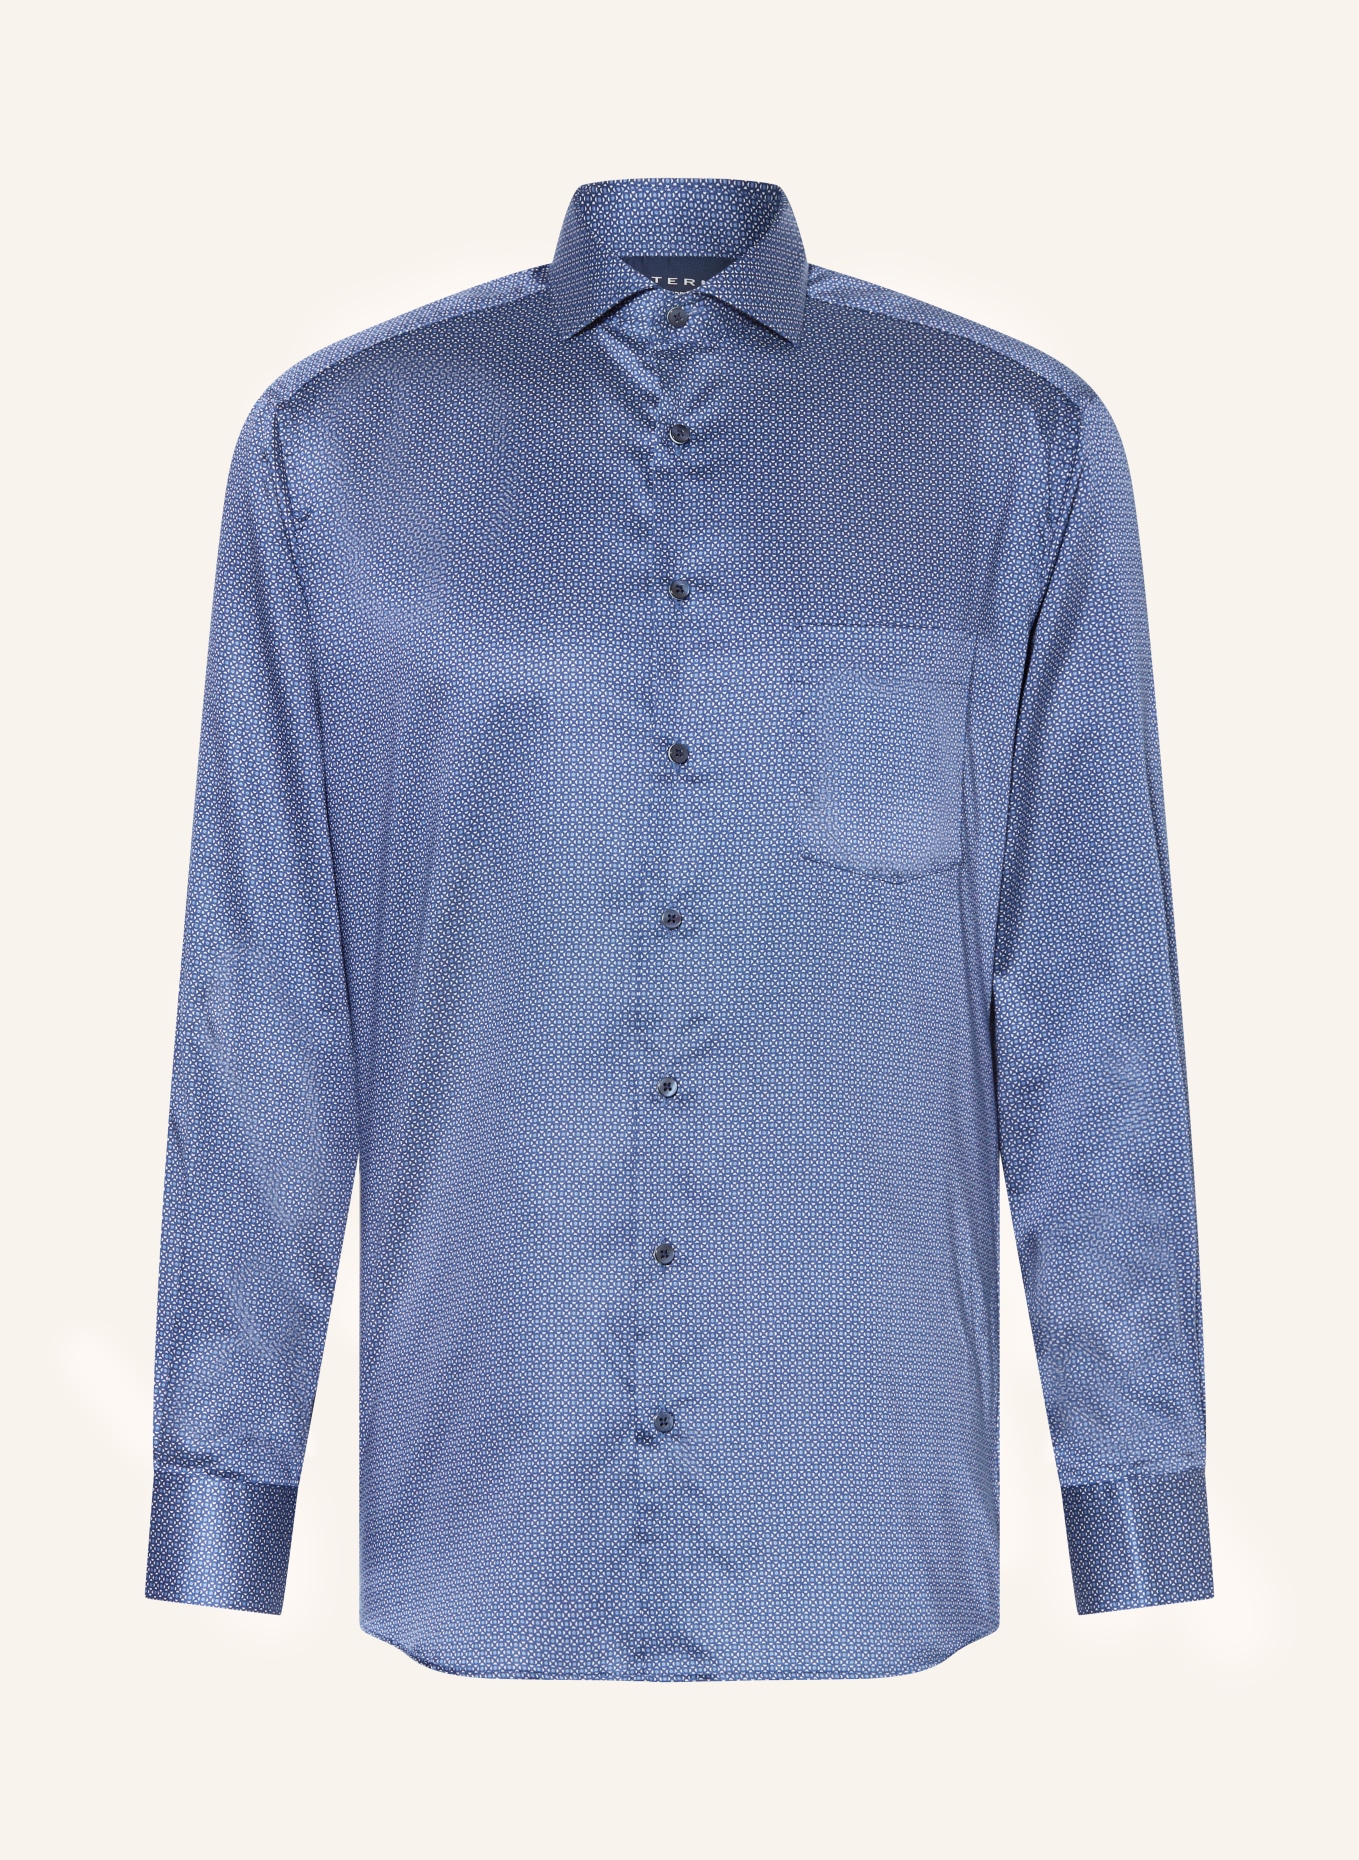 ETERNA Shirt modern in fit blue/ white dark blue